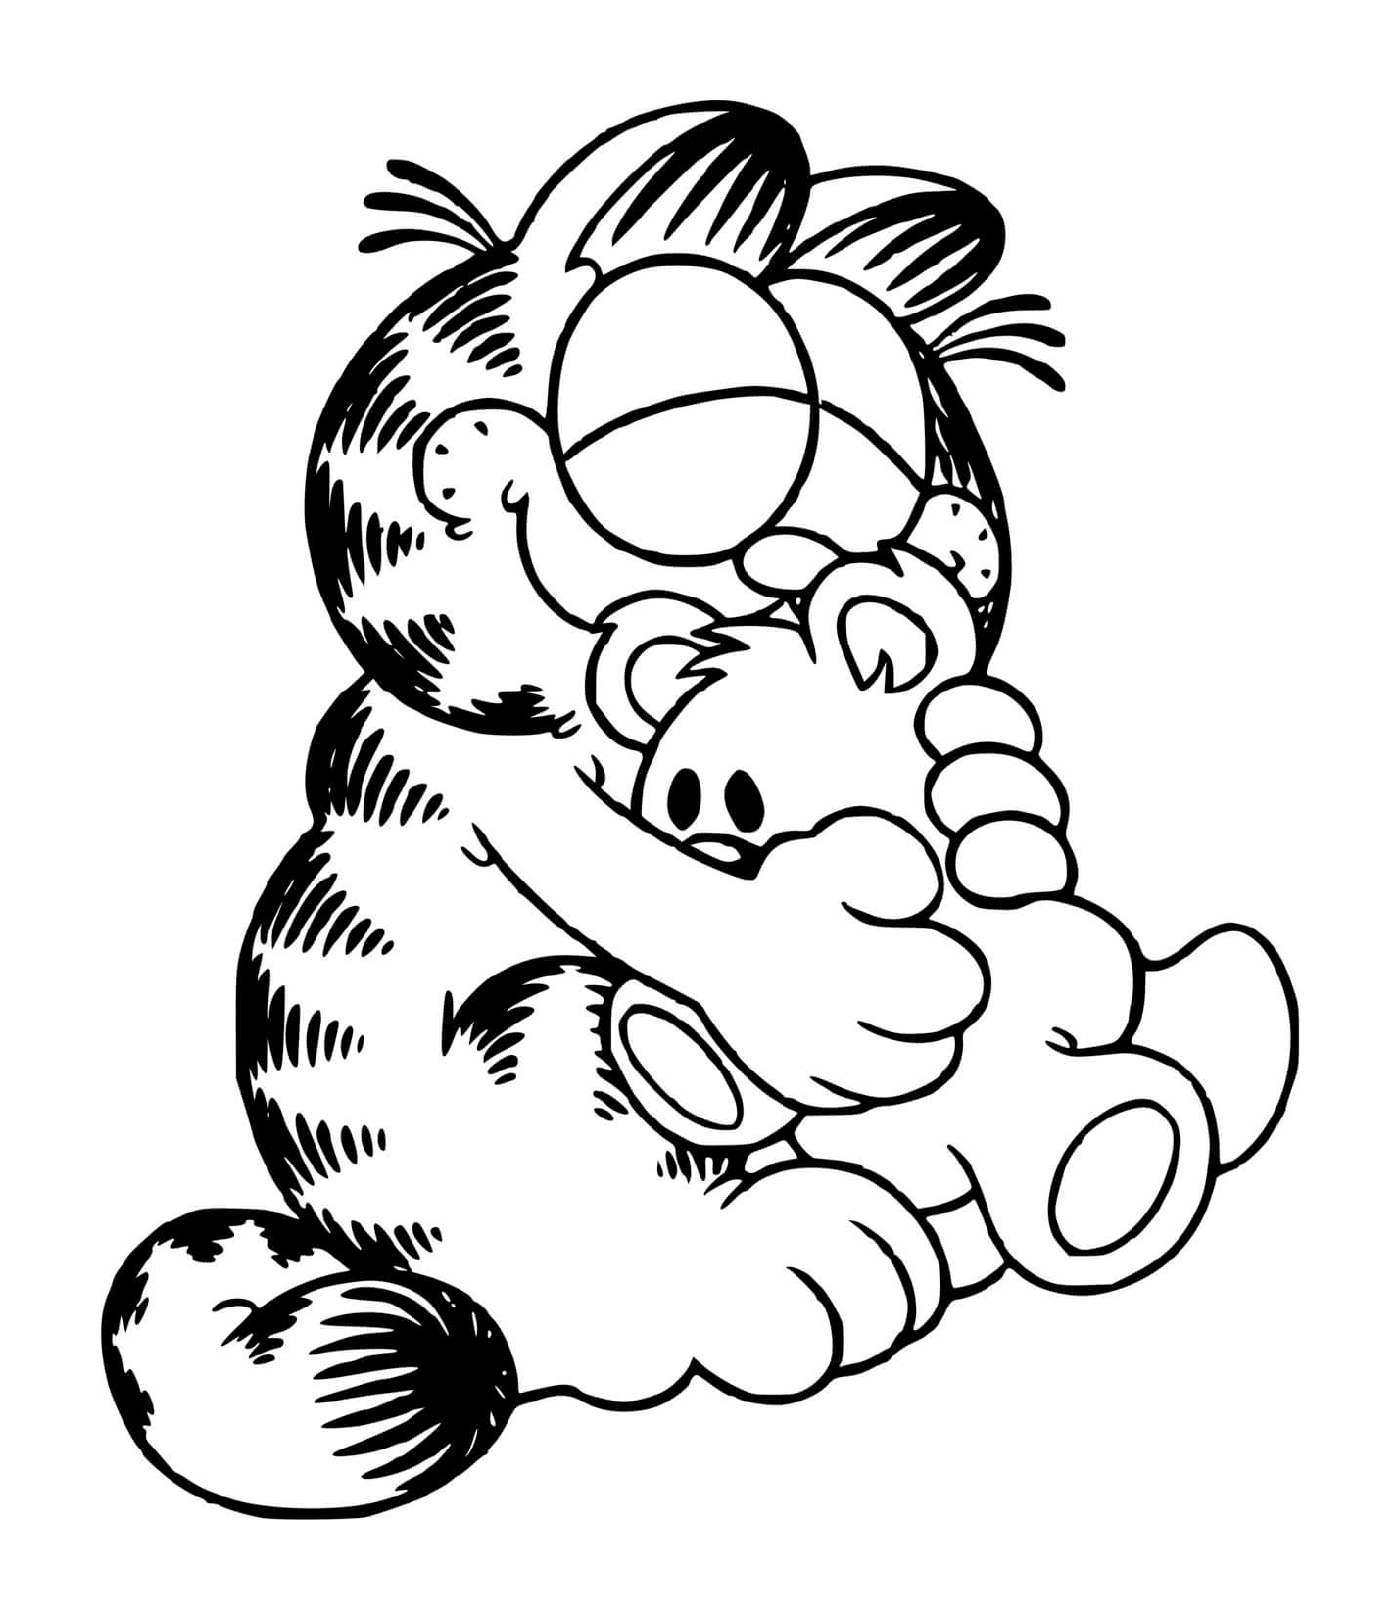  Garfield hugs his plush 